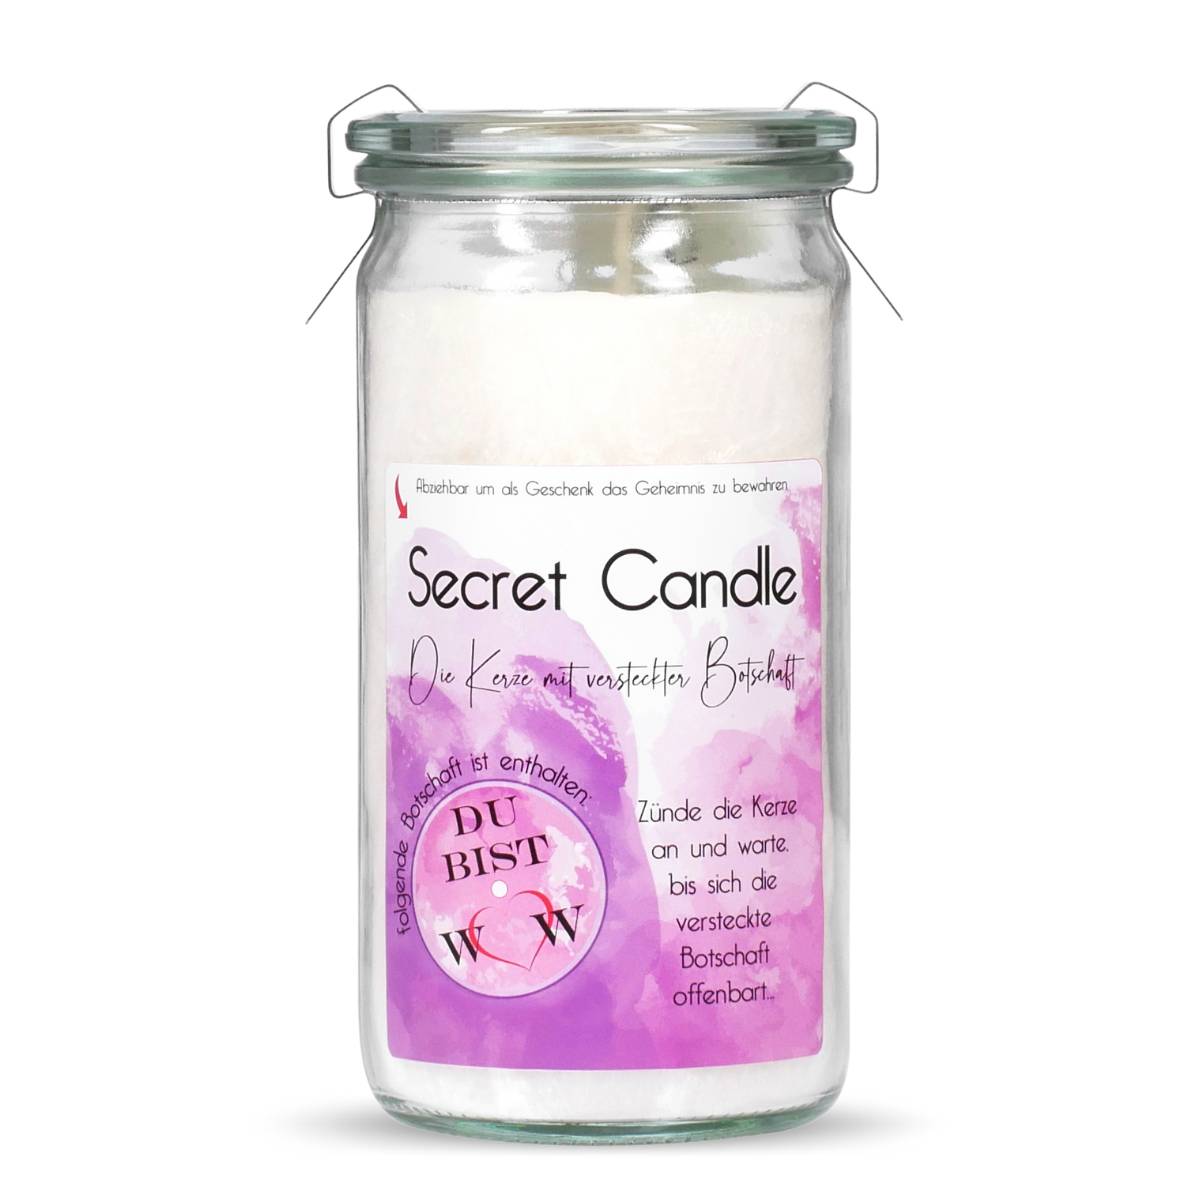 Du bist WOW - Erdbeer Rhabarber - Secret Candle Mini Jumbo Windlicht im Weckglas von Candle Factory